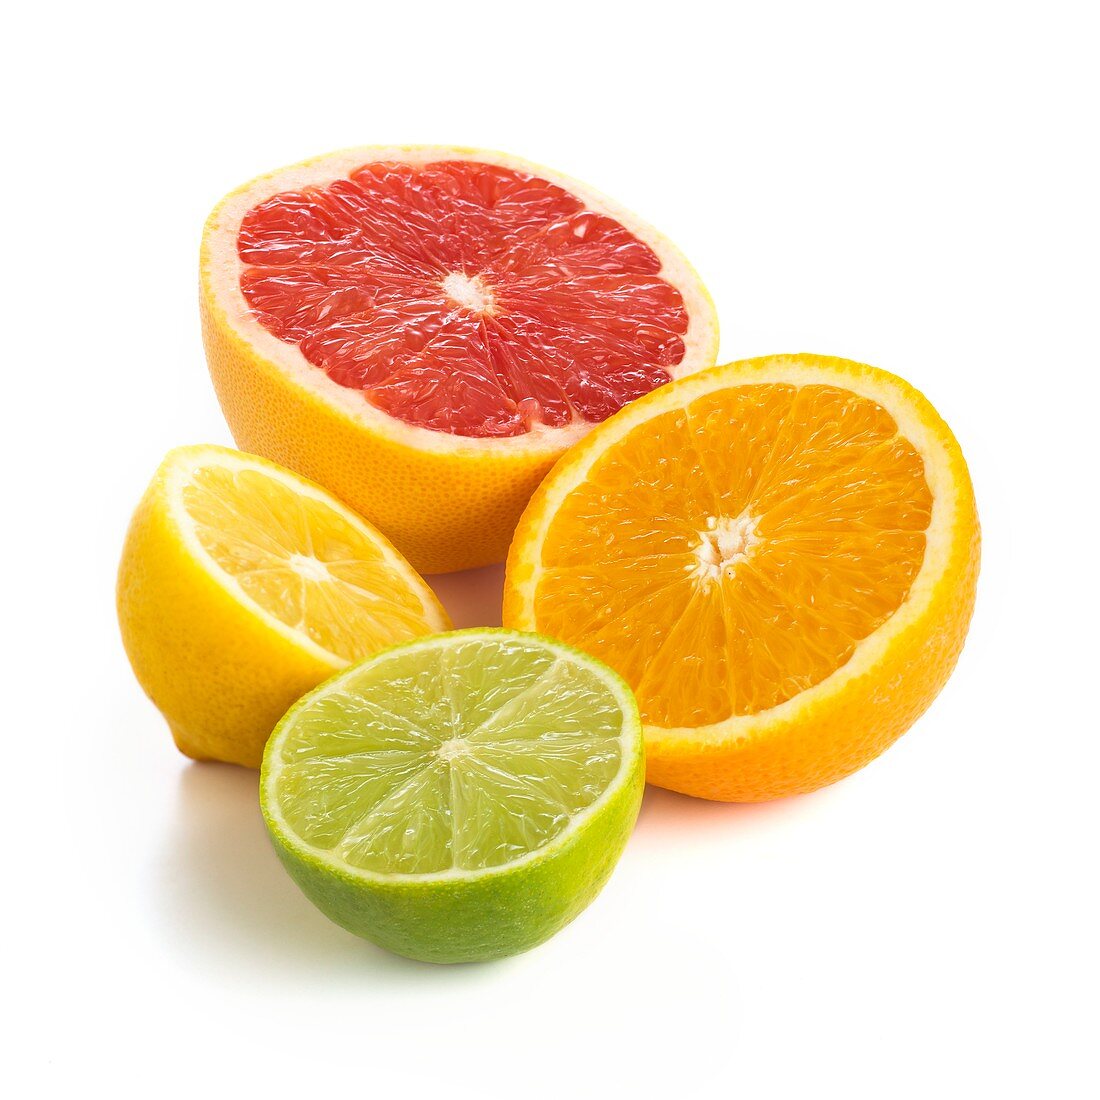 Citrus fruit halves